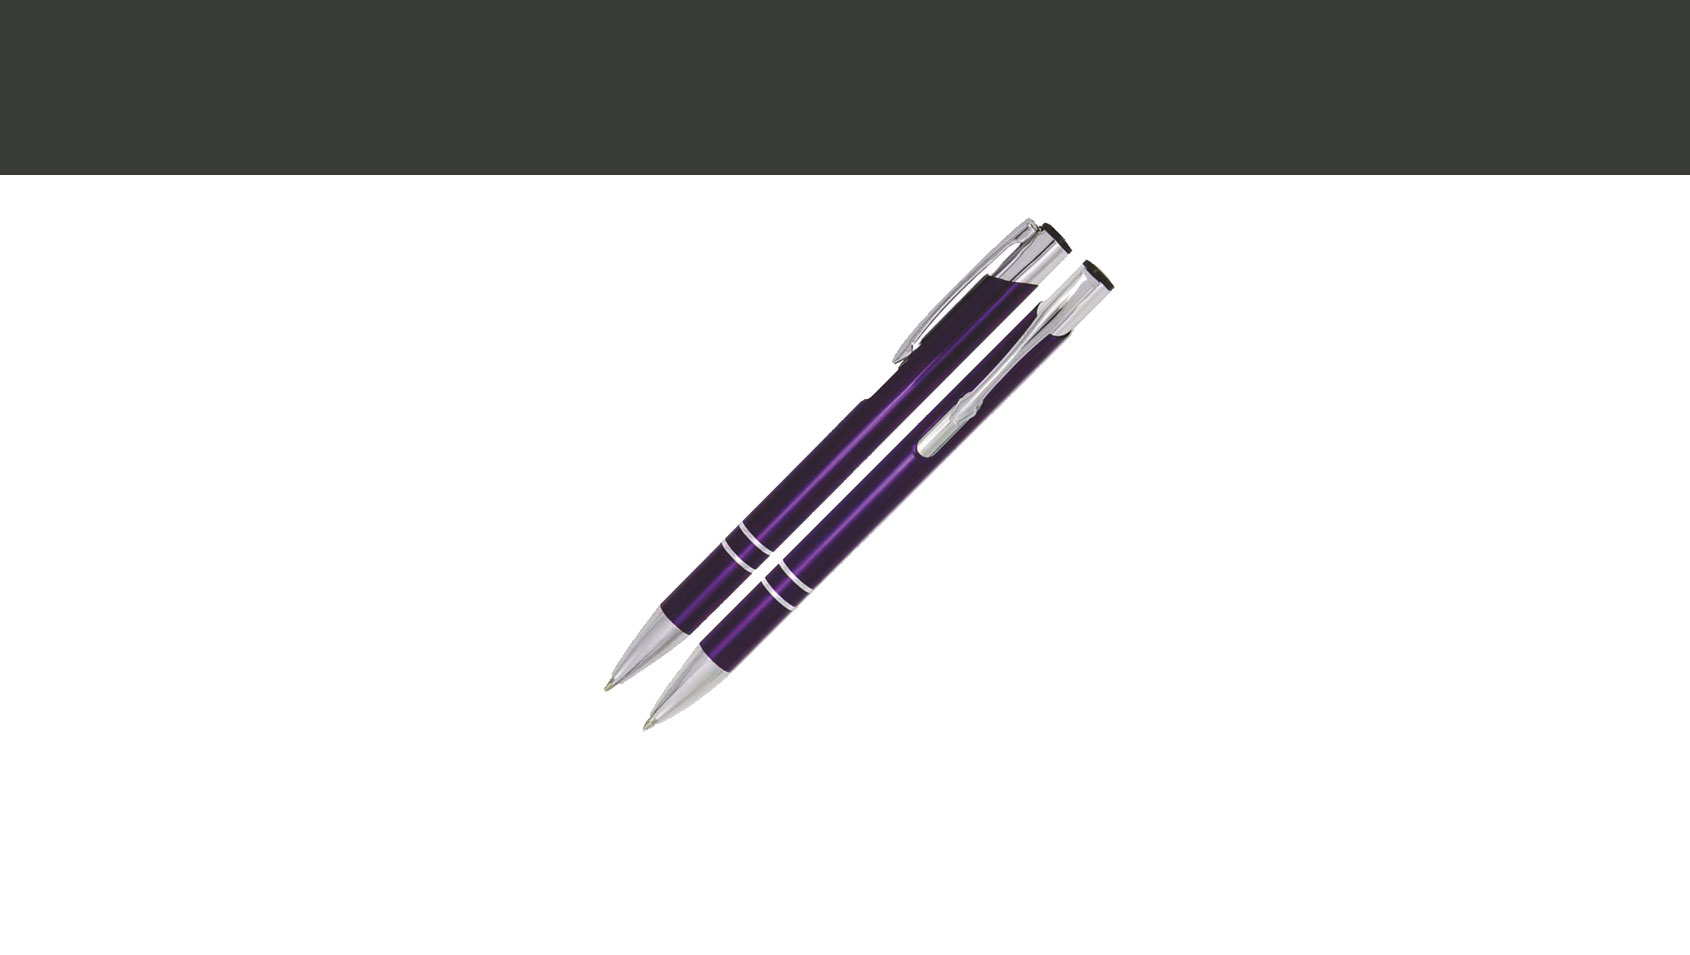 Długopis COSMO C-09 ciemnofioletowy